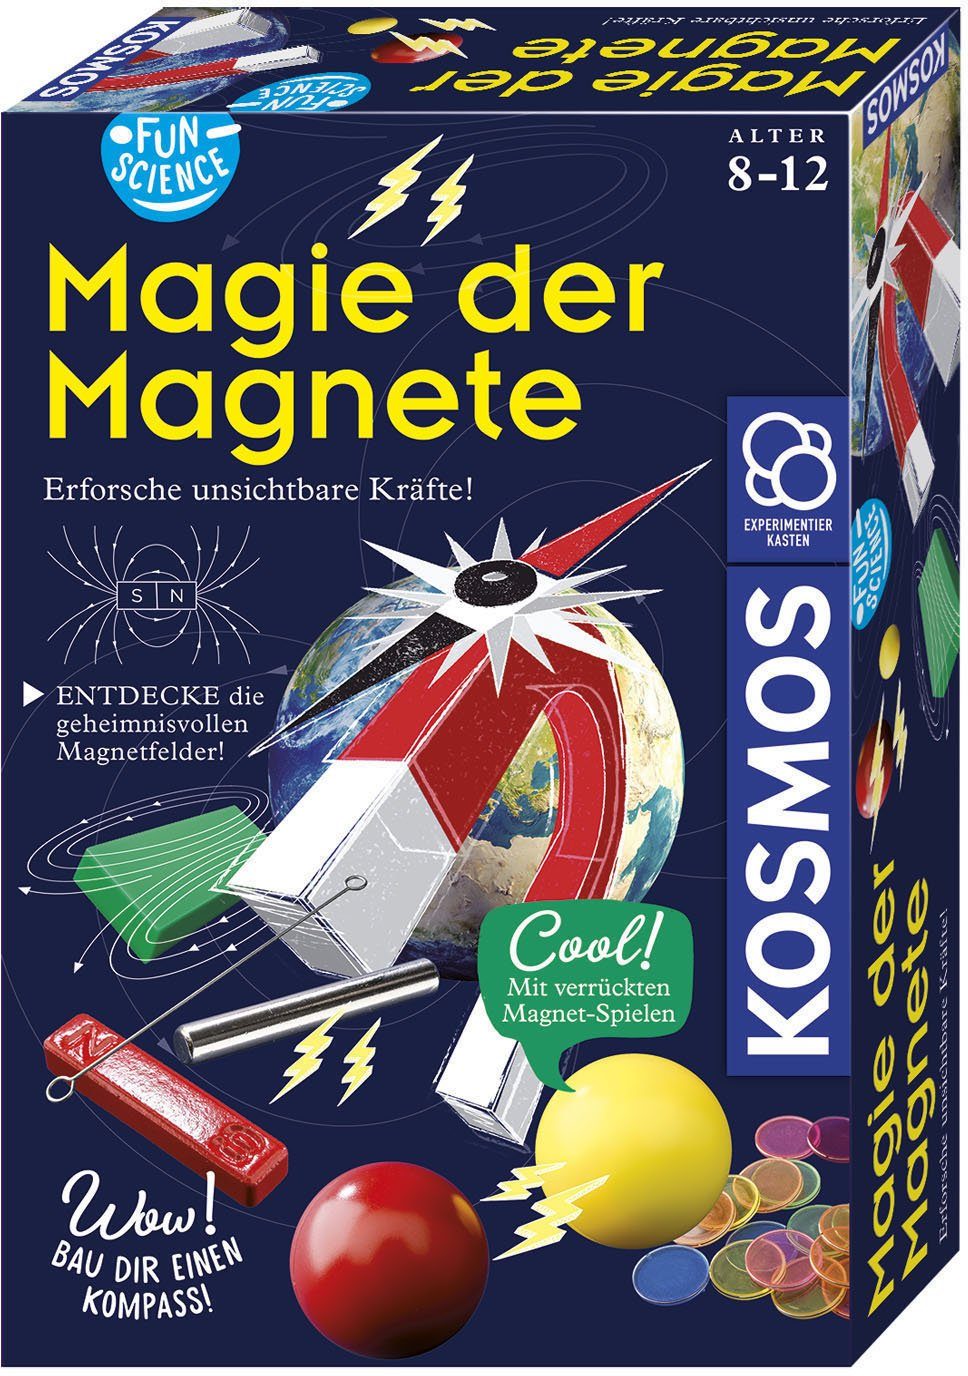 Kosmos Experimentierkasten Fun Science Magie der Magnete, Experimentierset  »Fun Science Magie der Magnete« für Entdecker